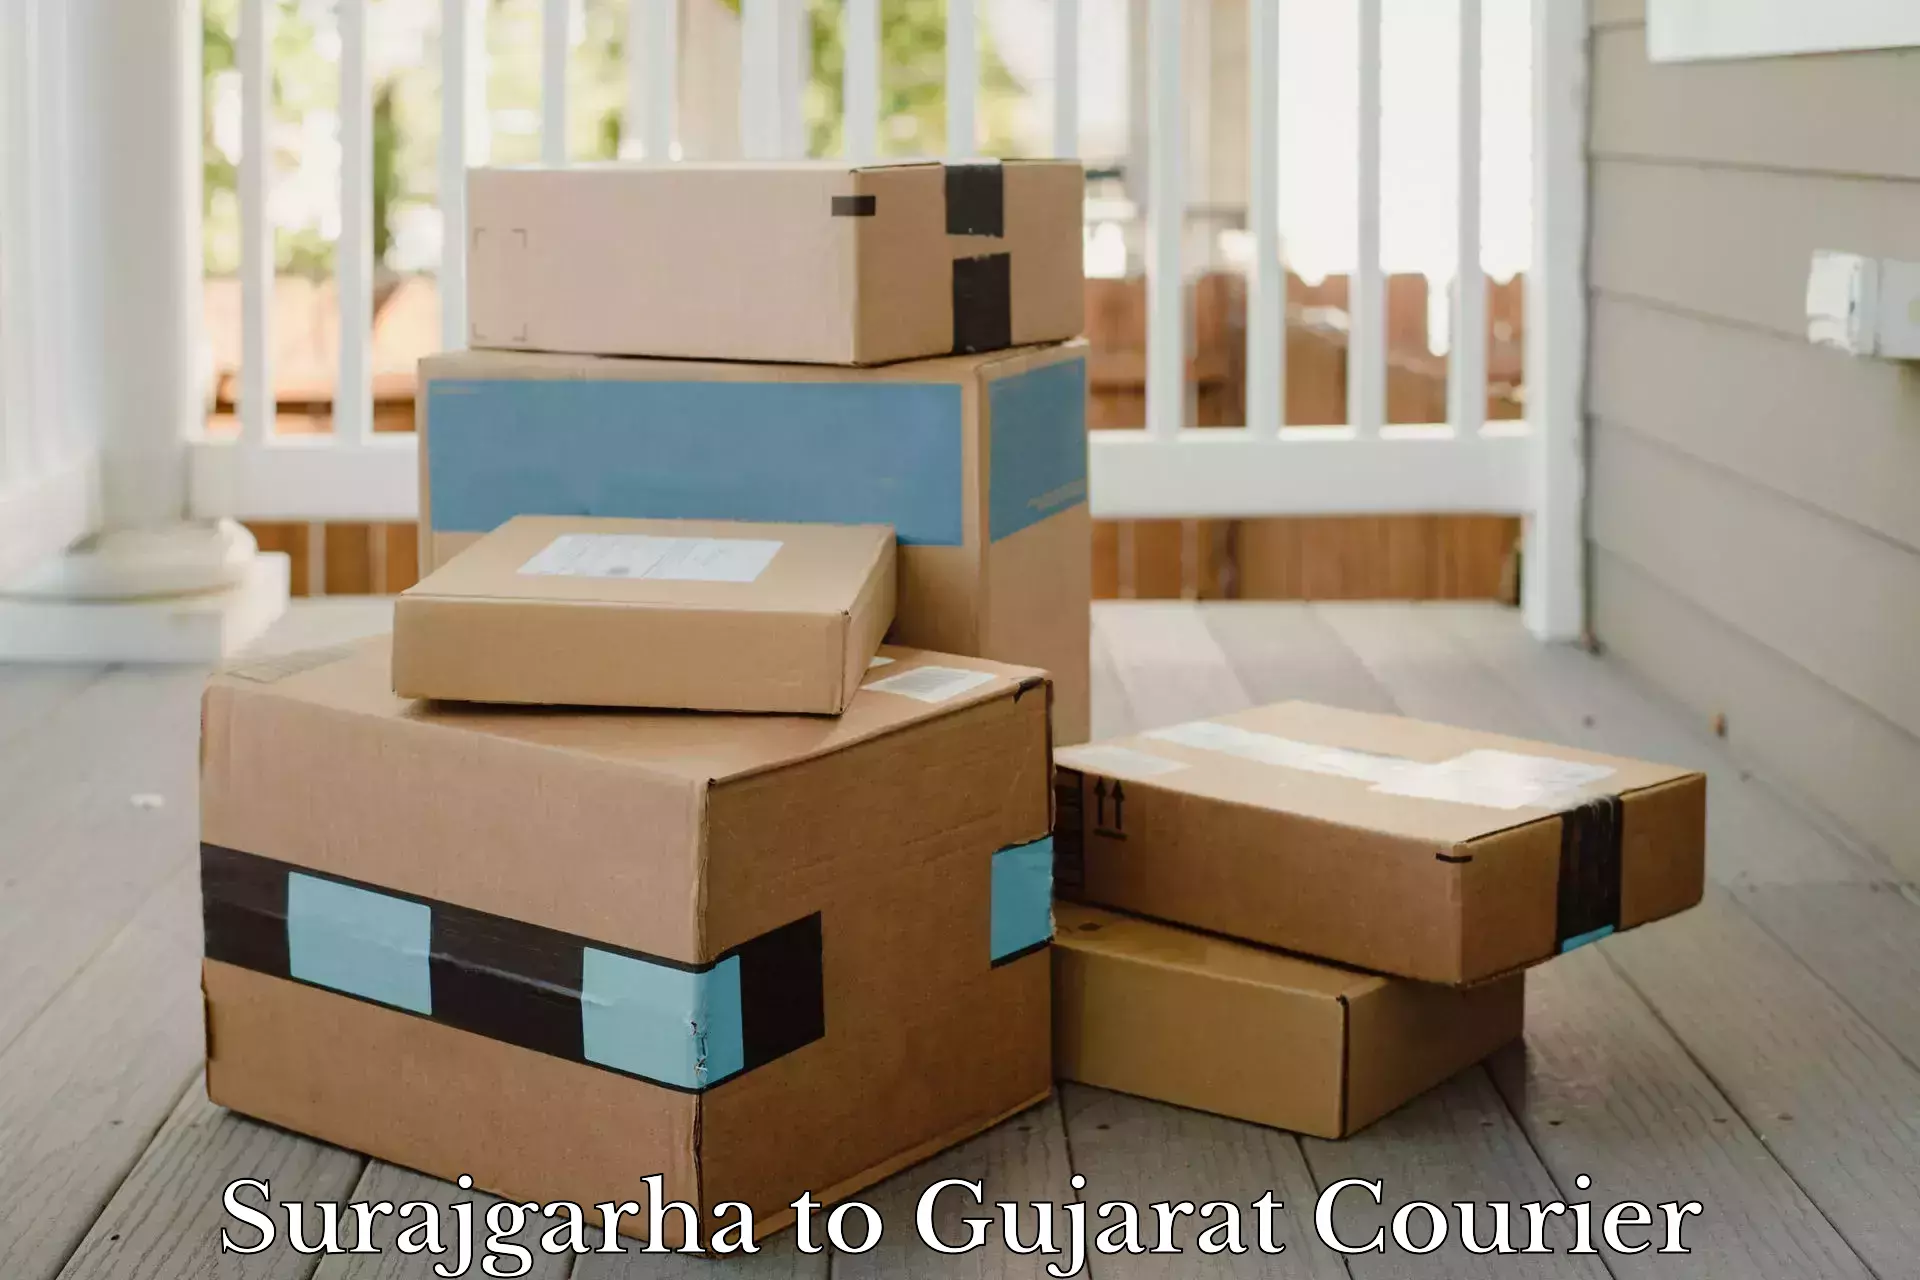 Efficient parcel transport Surajgarha to Tharad